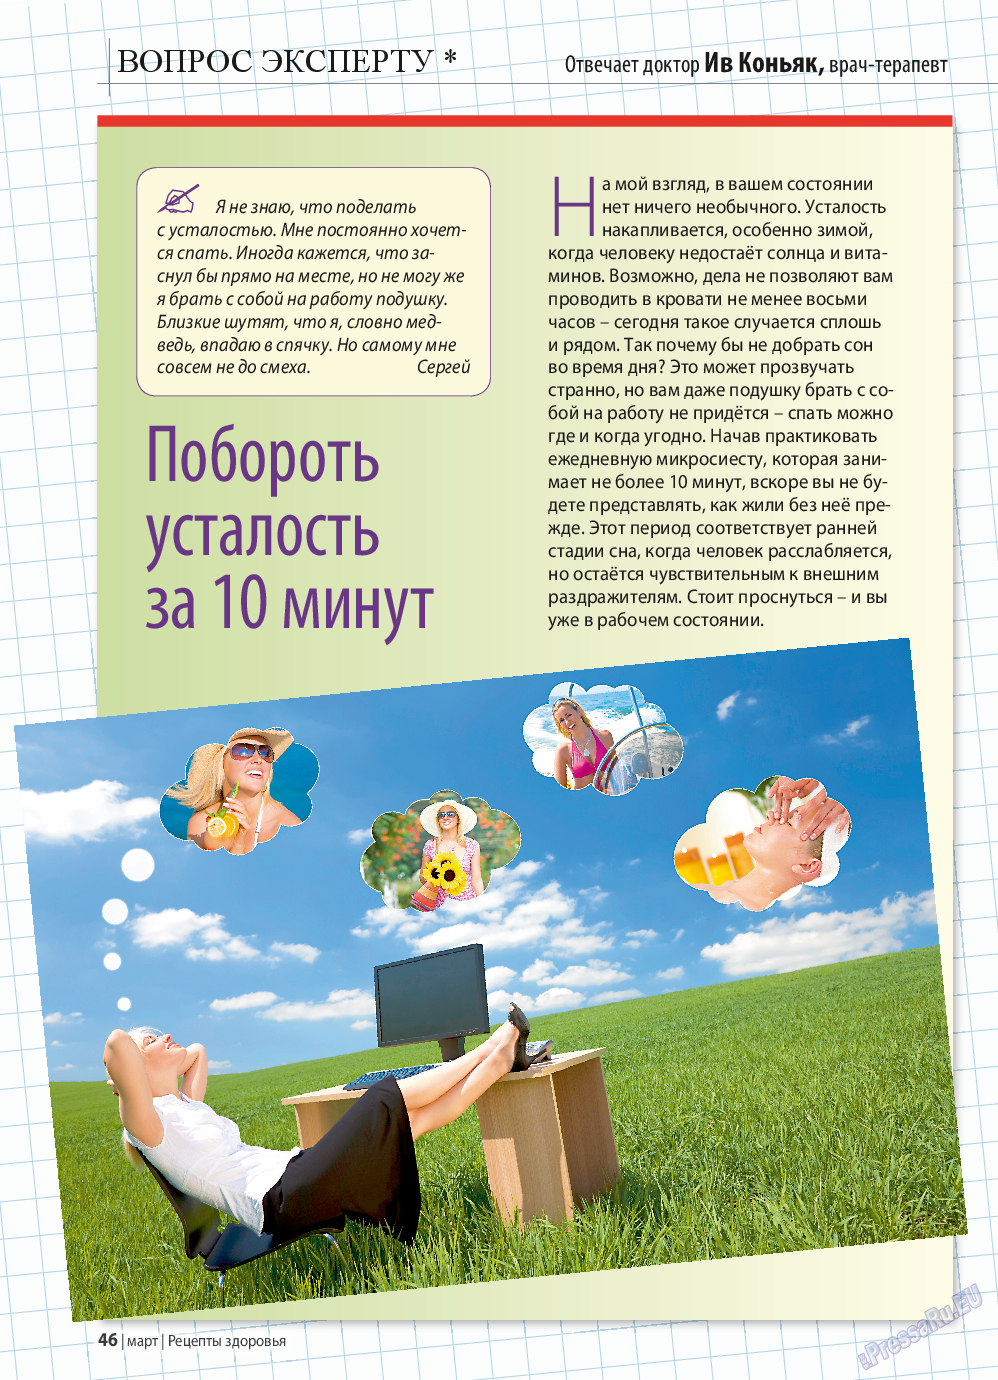 Рецепты здоровья, журнал. 2015 №70 стр.46